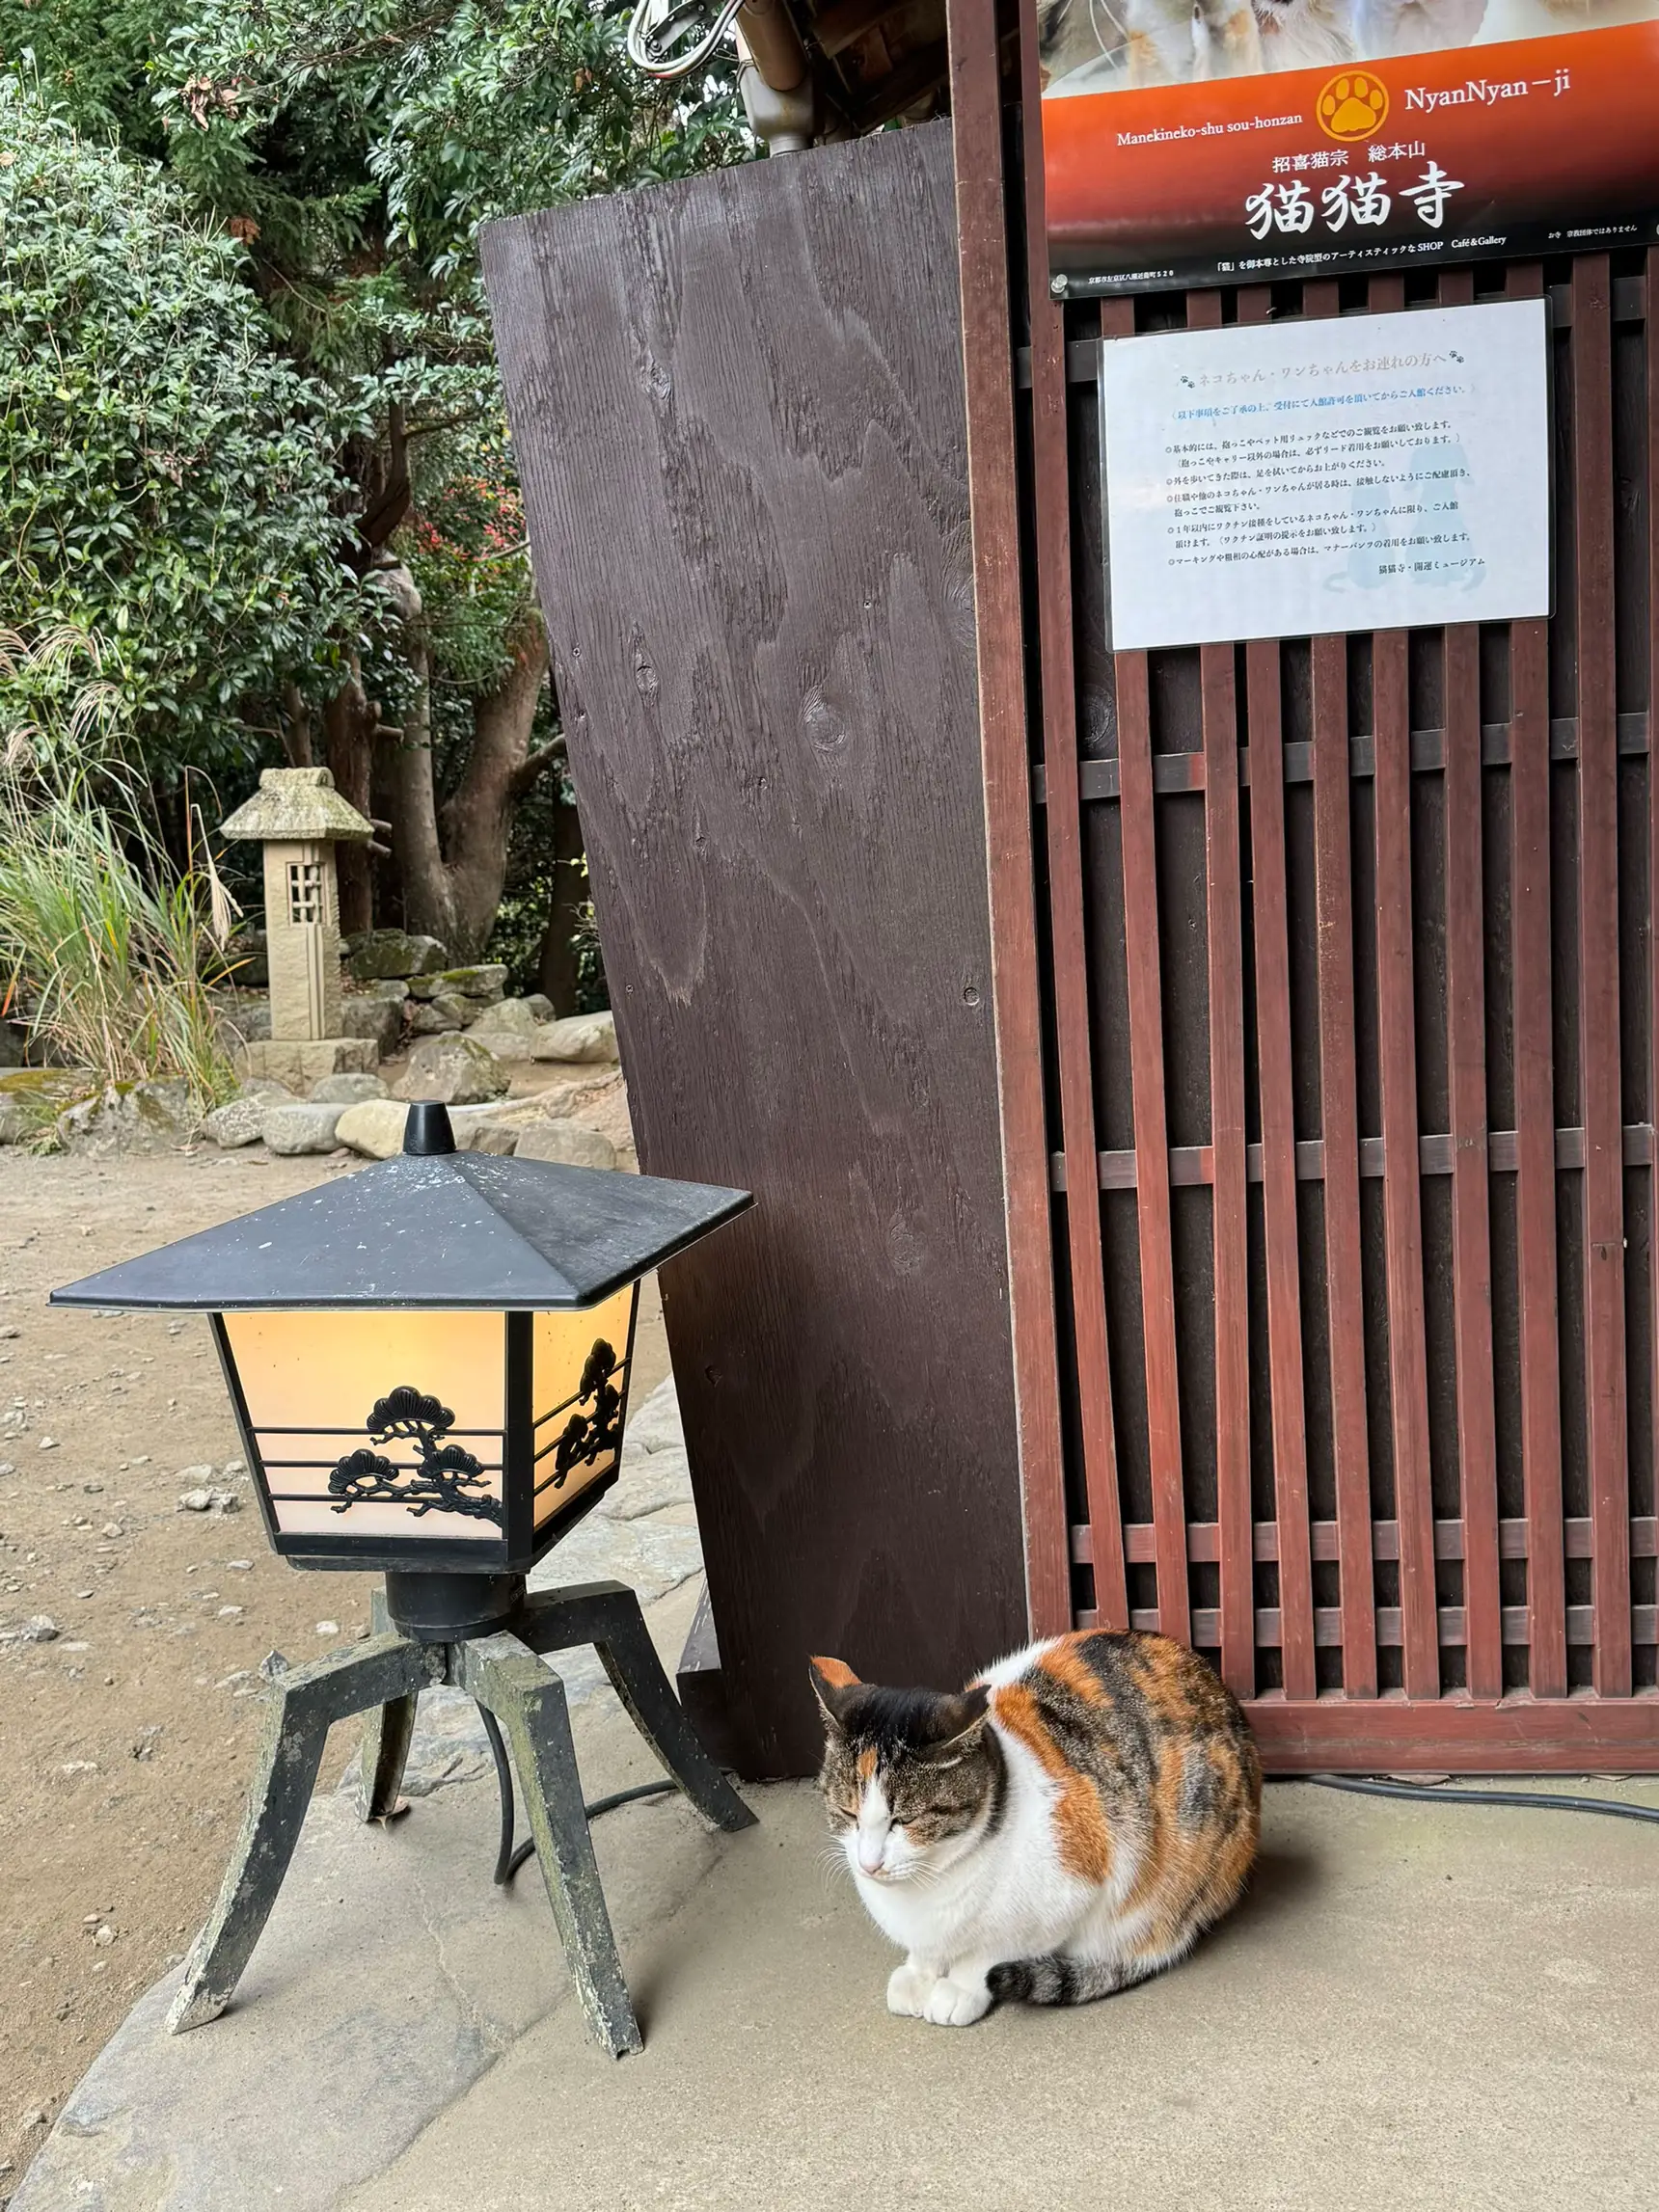 2022年 猫の日記念 ニャンニャンニャン切符 猫猫寺拝観券 叡山 